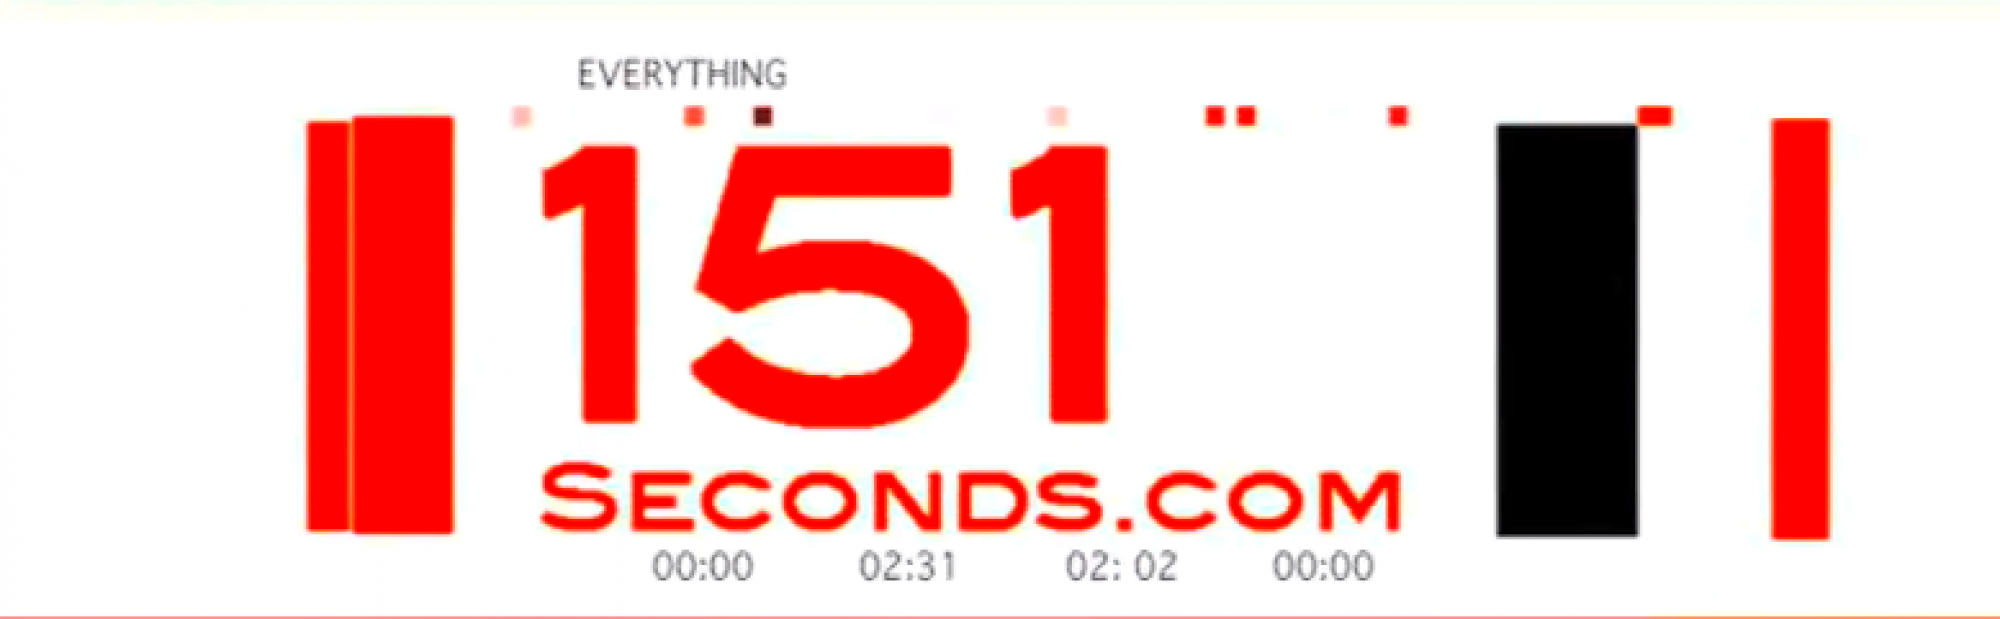 151seconds.com